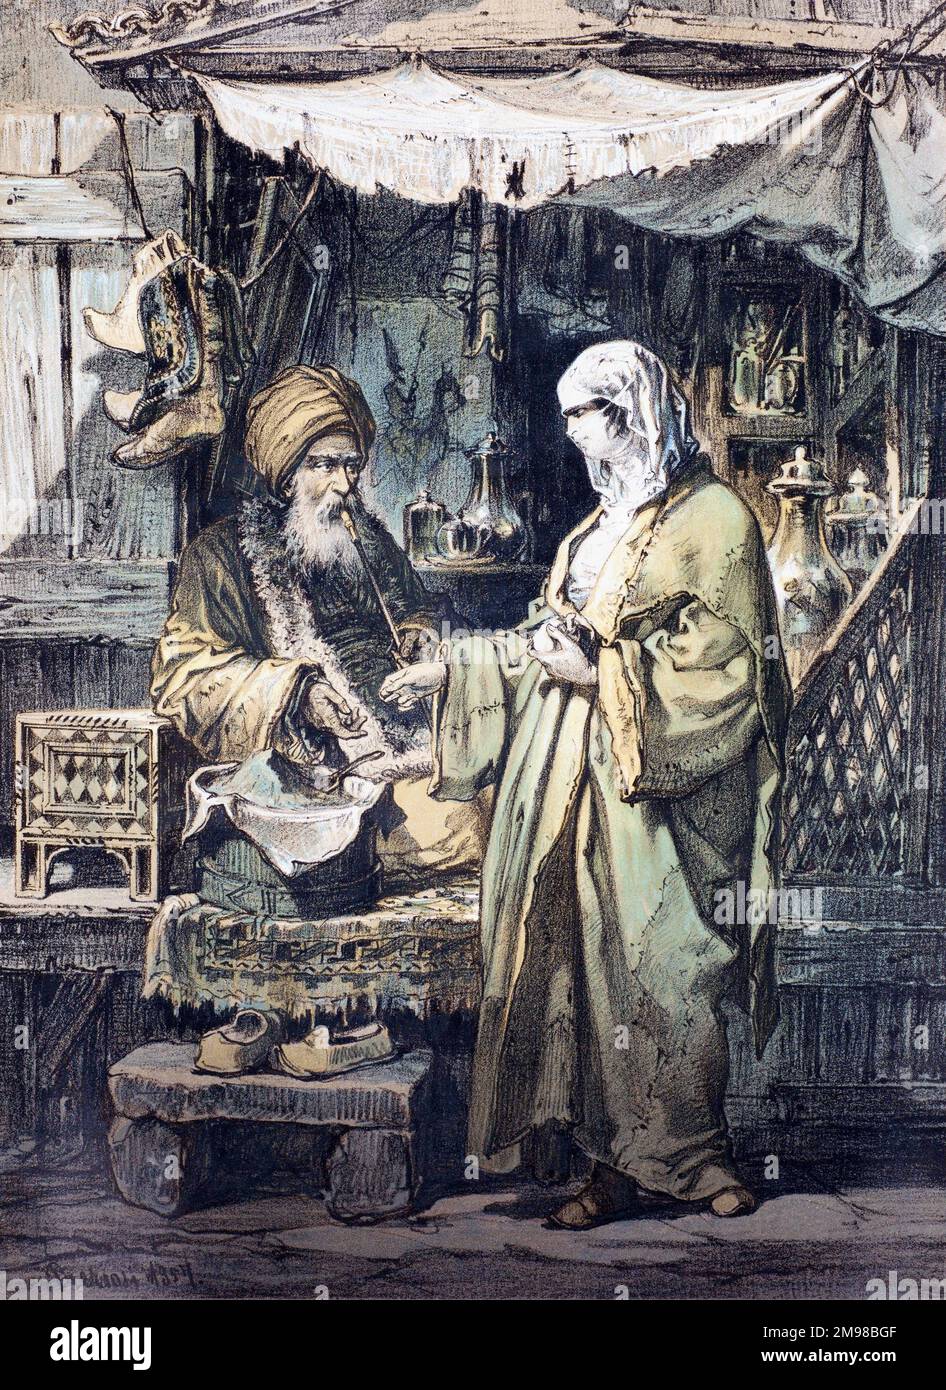 Ein Apotheker-Laden auf einem arabischen Basar. Eine verschleierte Kundin spricht mit dem Drogendealer. Nach einer französischen Ausgabe von 1857. Stockfoto